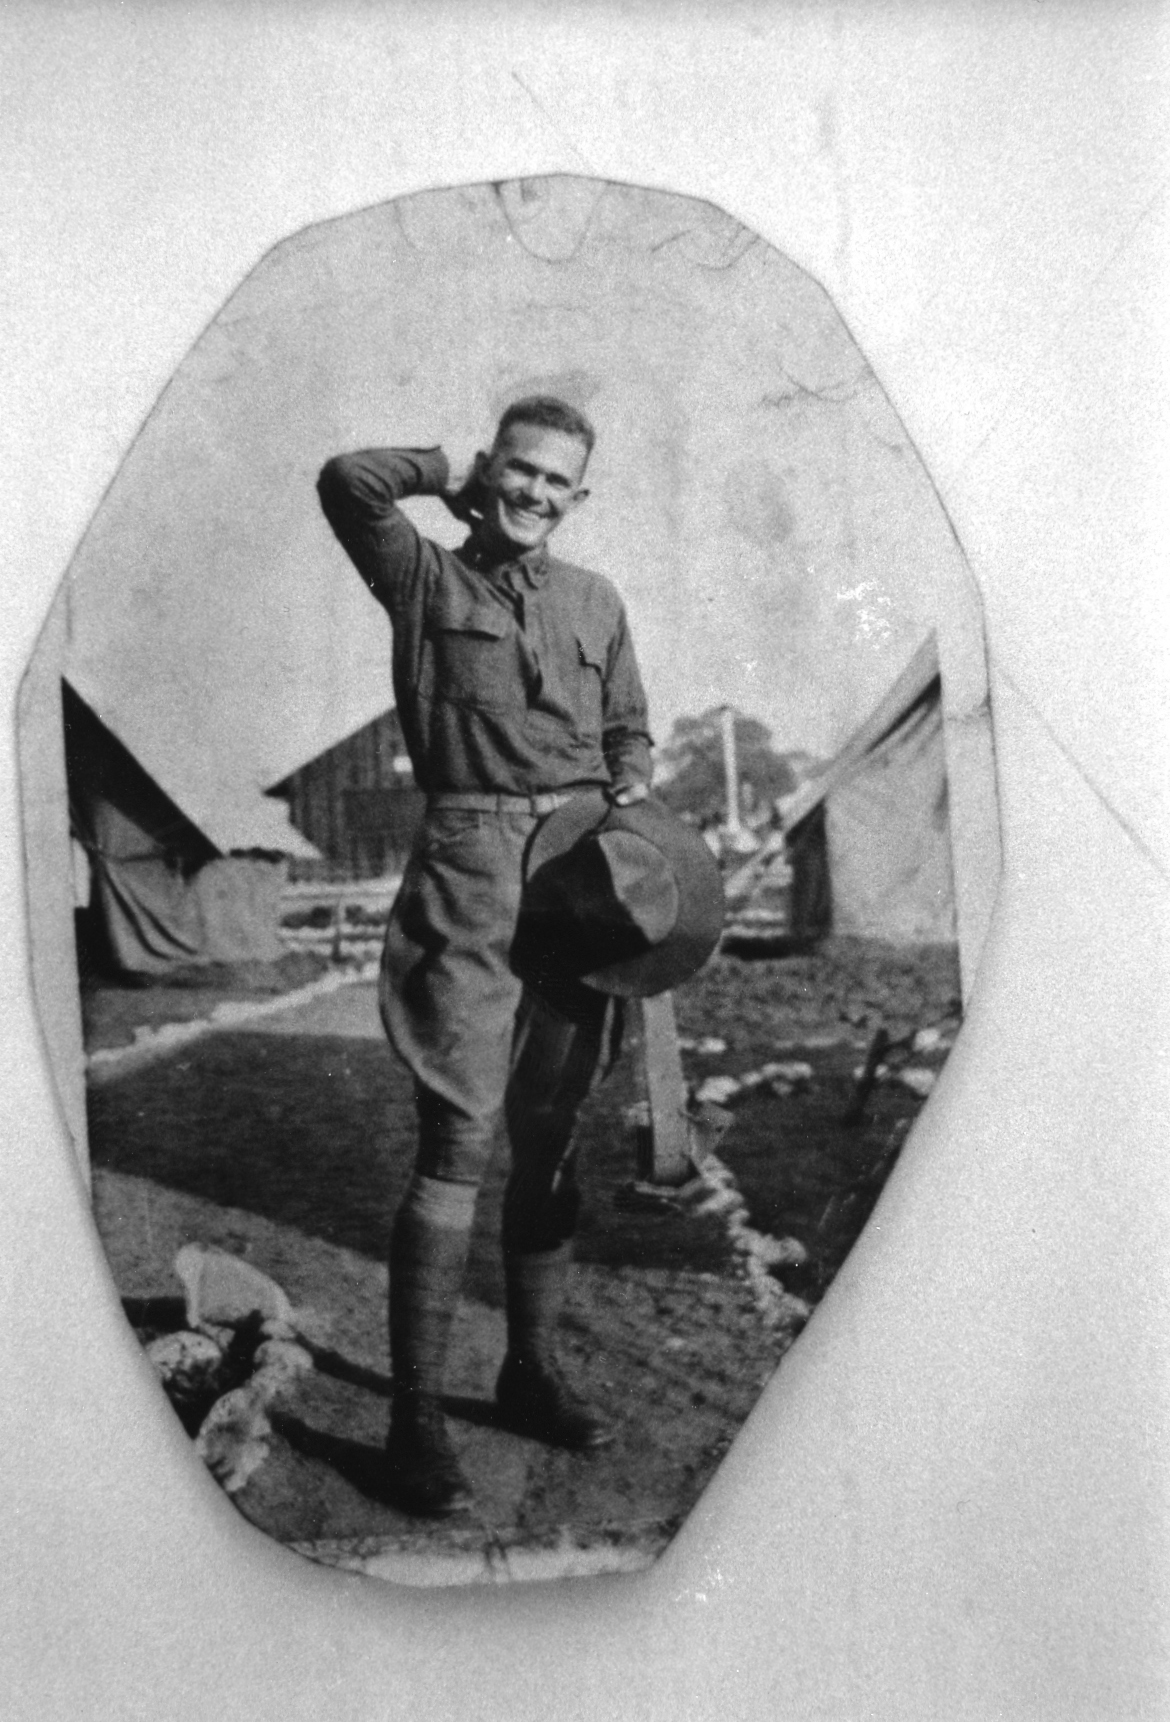 1917-1918 Opa in World War 1 training